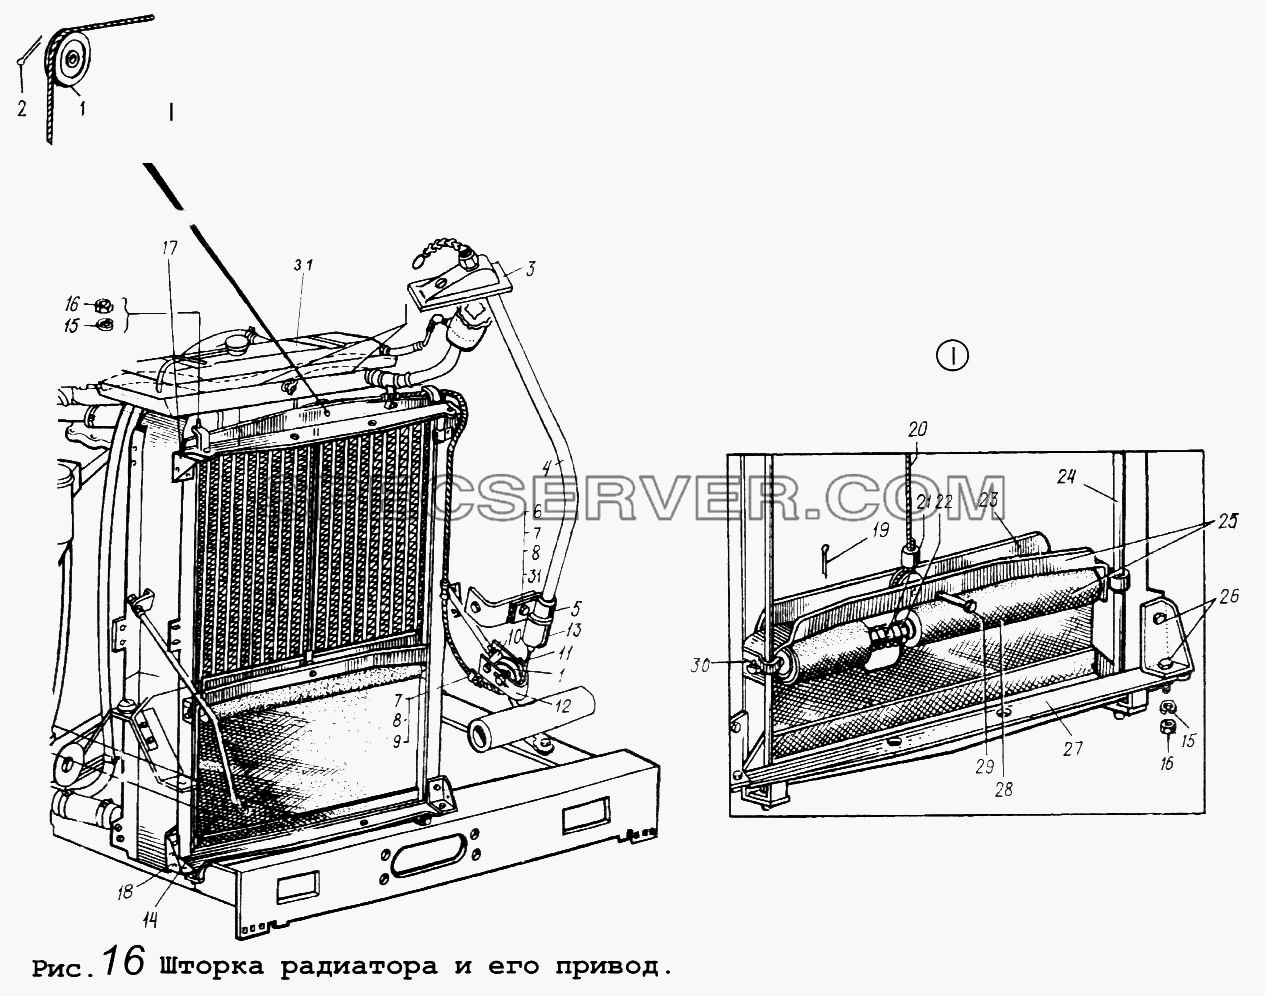 Шторка радиатора и его привод для МАЗ-64255 (список запасных частей)